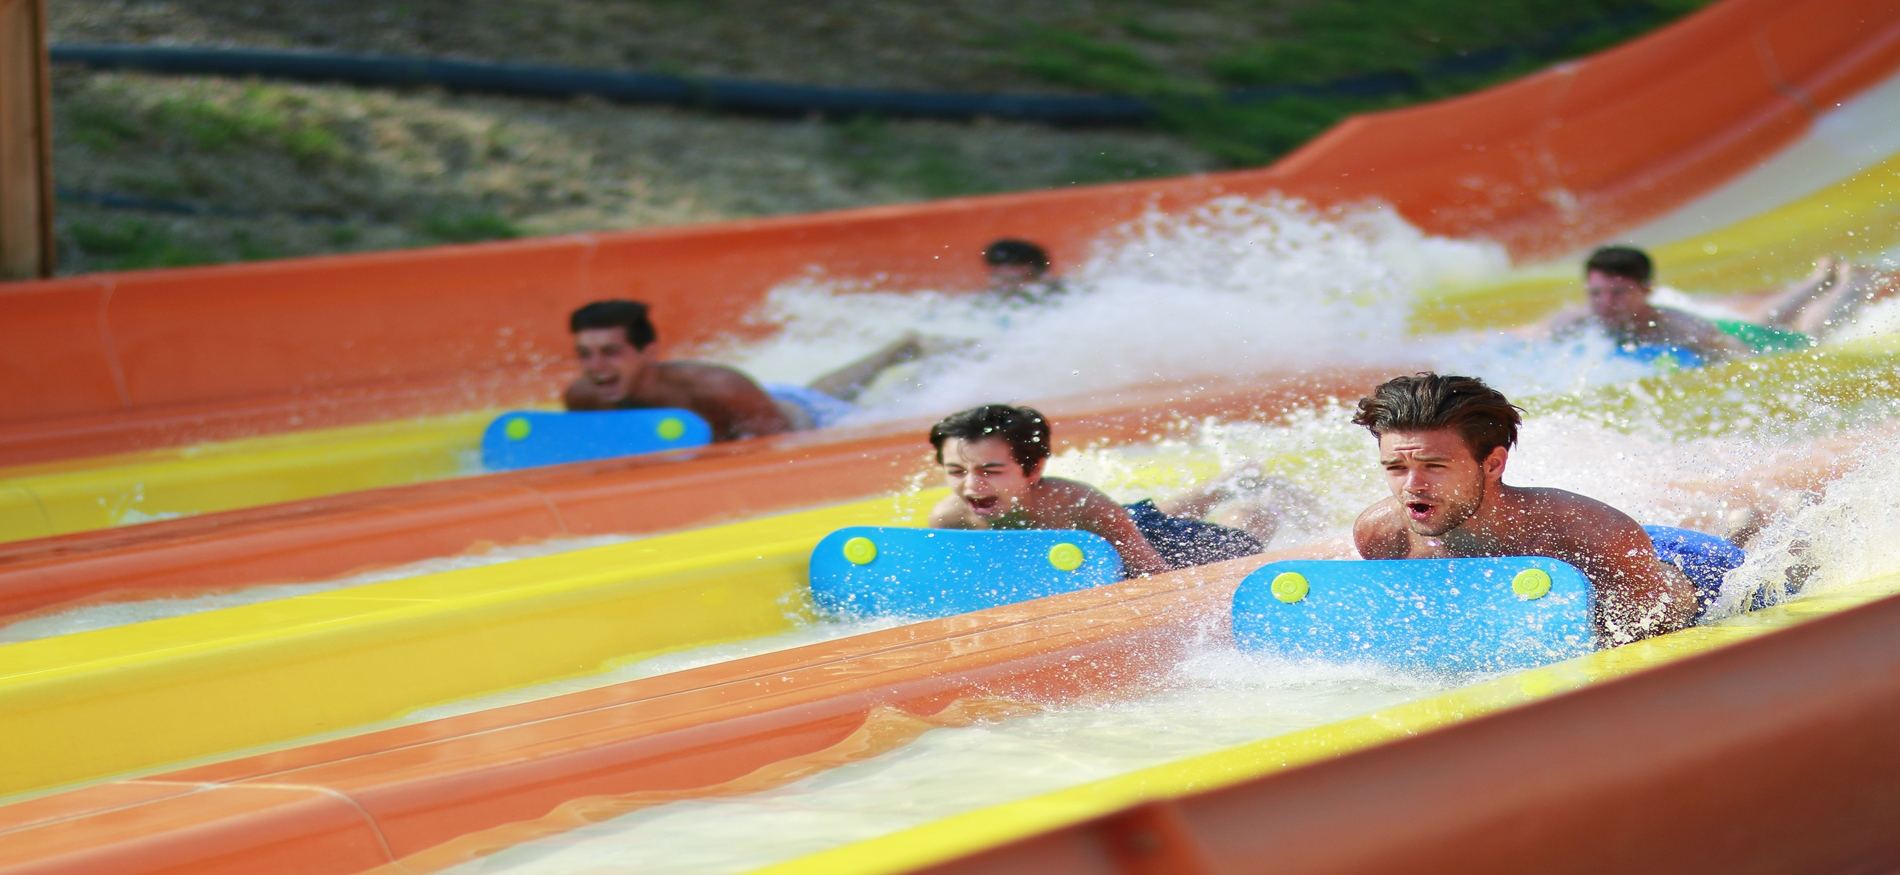 Juego "Aqua Racers" del parque acuático Six Flags Hurricane Harbor Oaxtepec